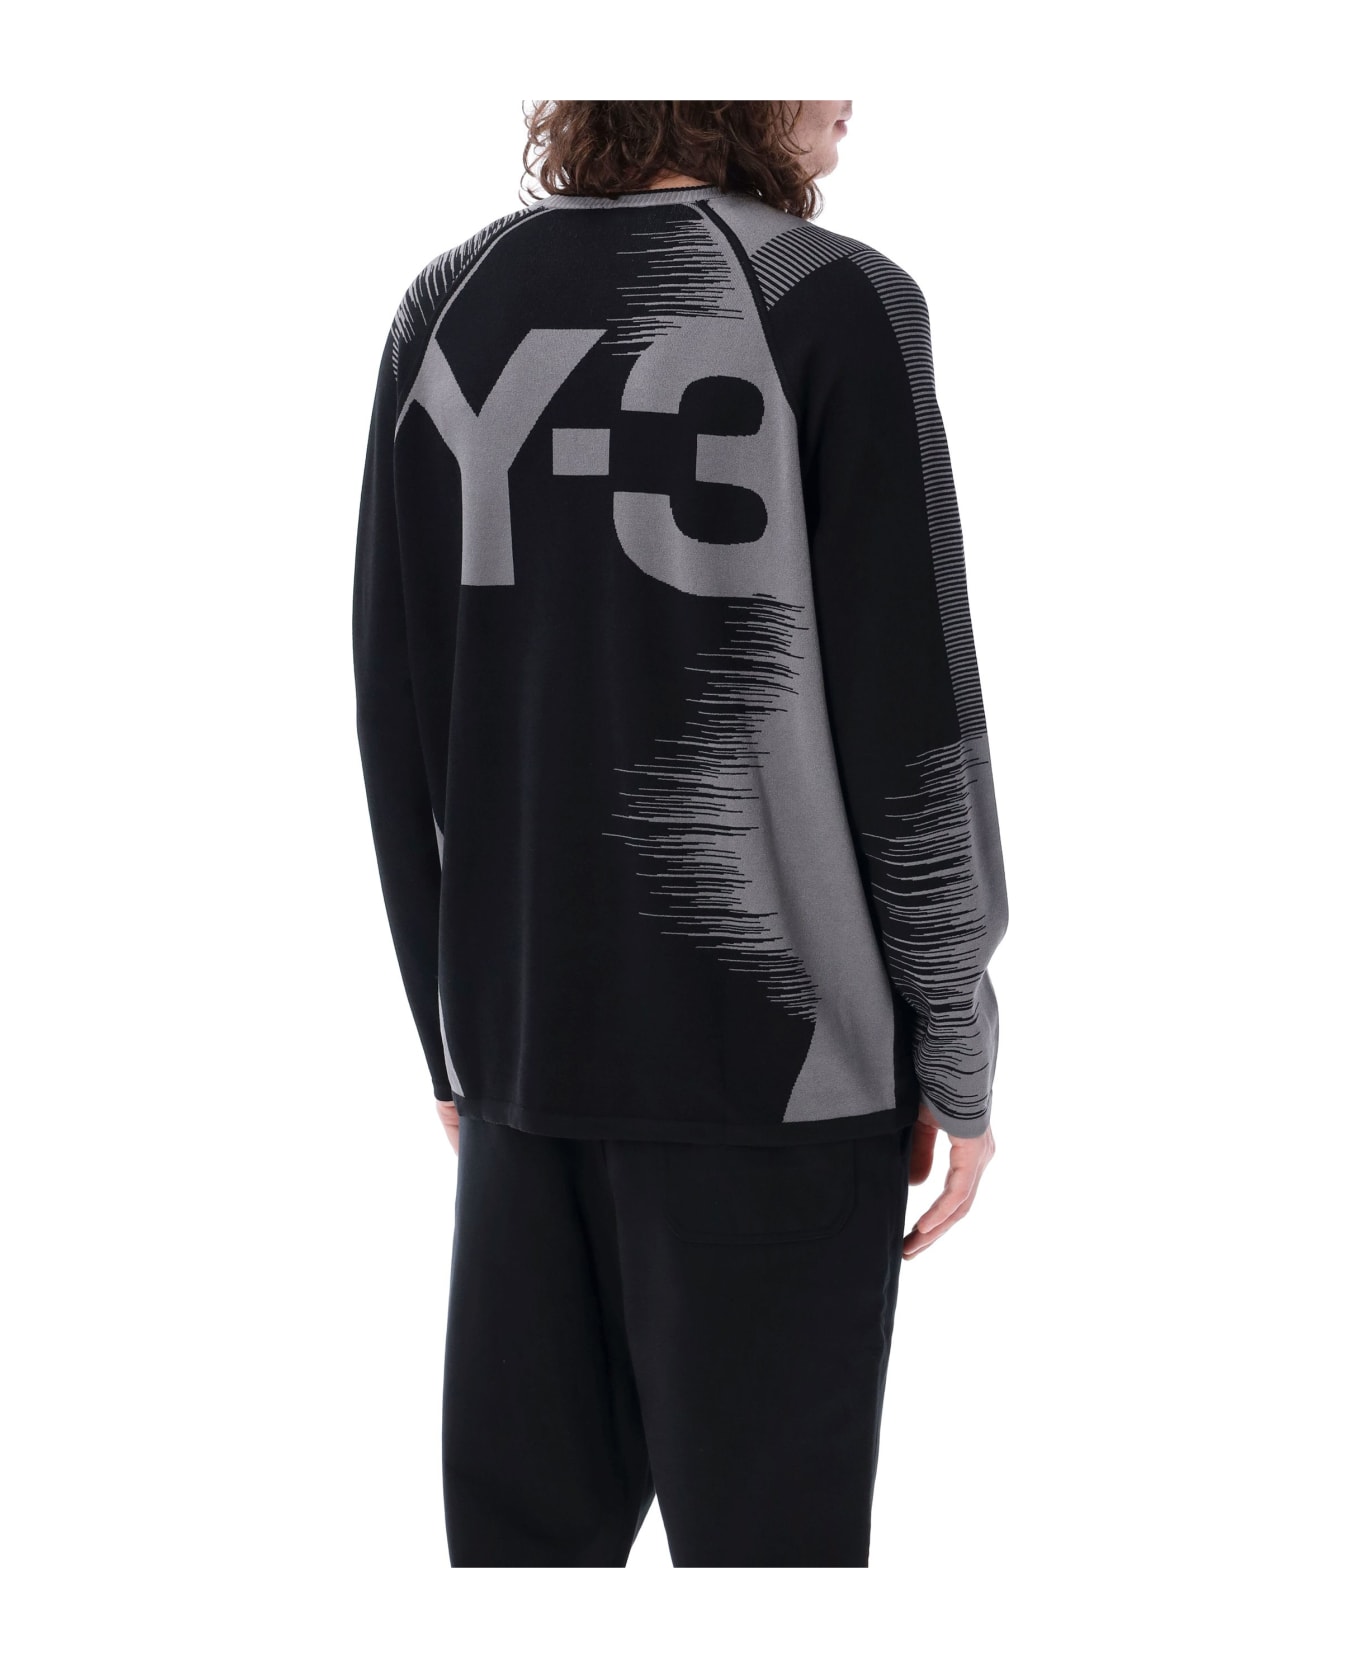 Y-3 Logo Knit Sweater - GREY BLACK ニットウェア